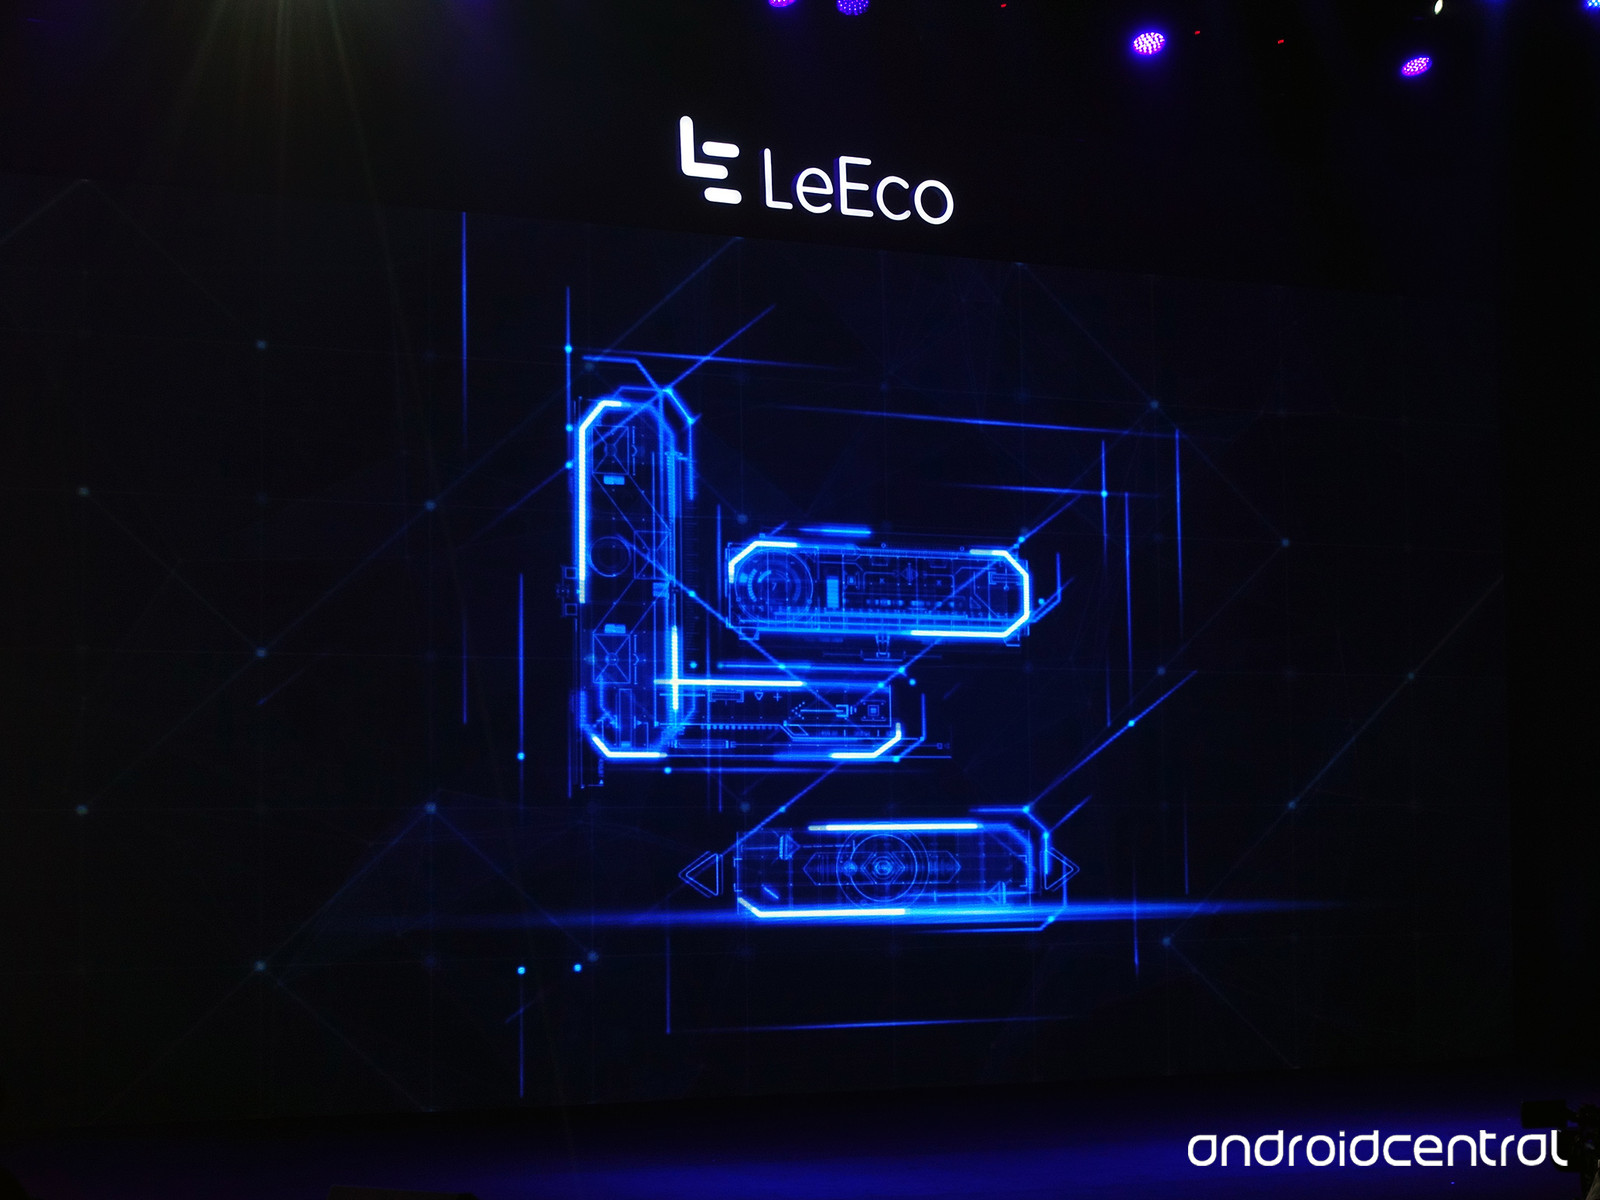 گوشی LeEco Le X850 : بازهم قدرتمندی از کشور چین